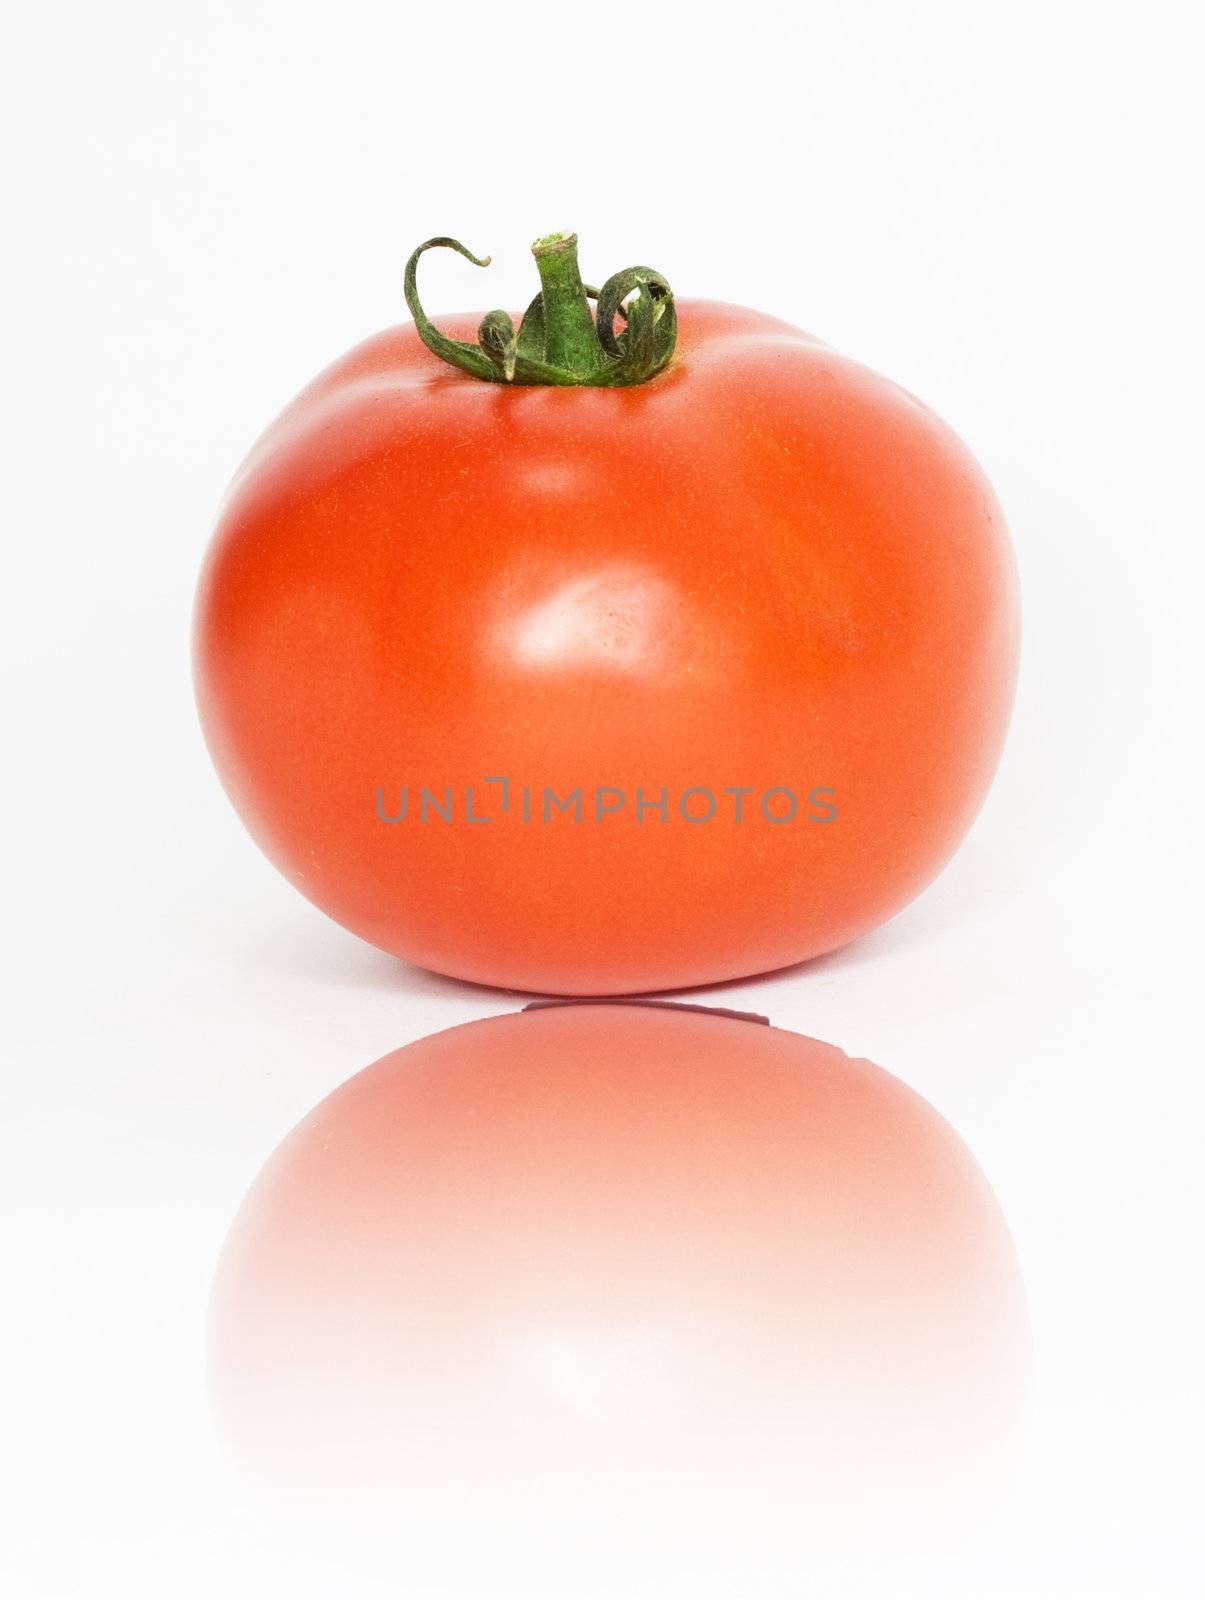 one tomato by schankz